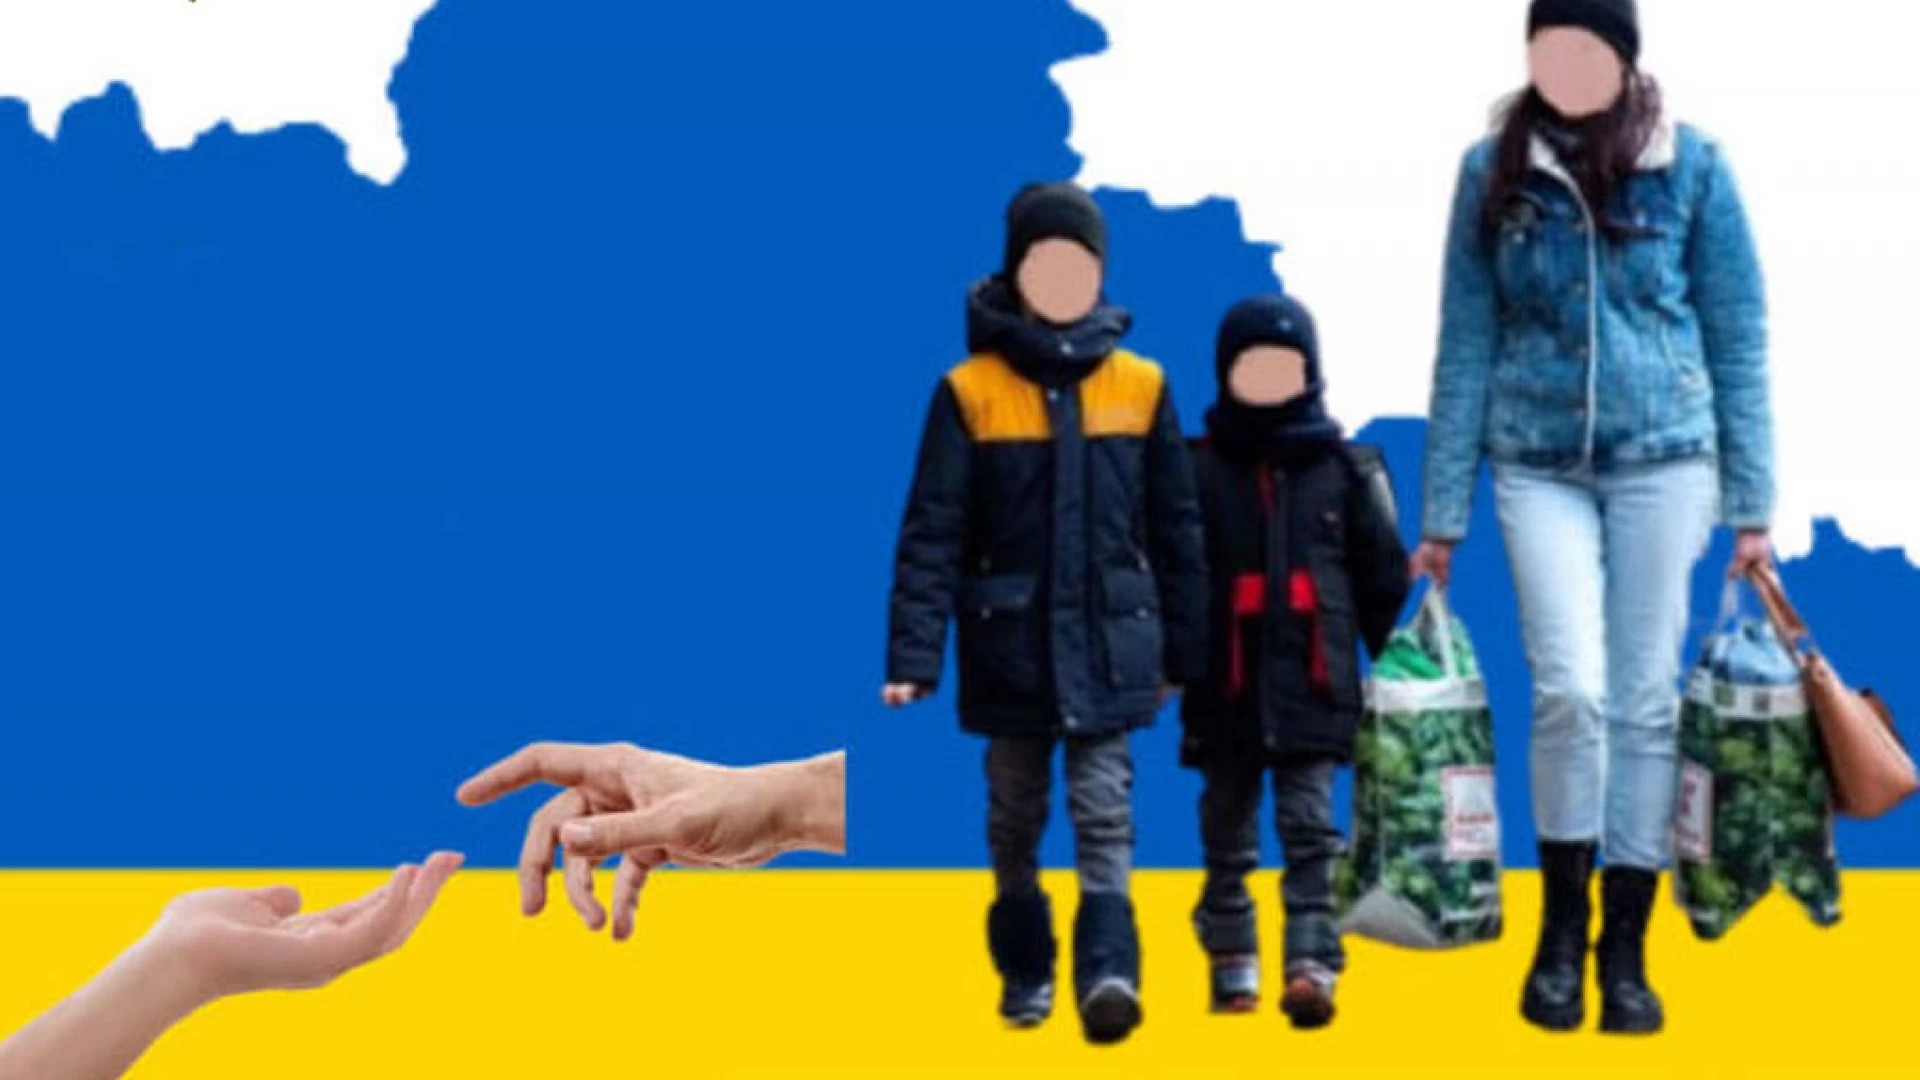 Gestione dei profughi provenienti dall'Ucraina. Il comune di Isernia pubblica il vademecum da seguire